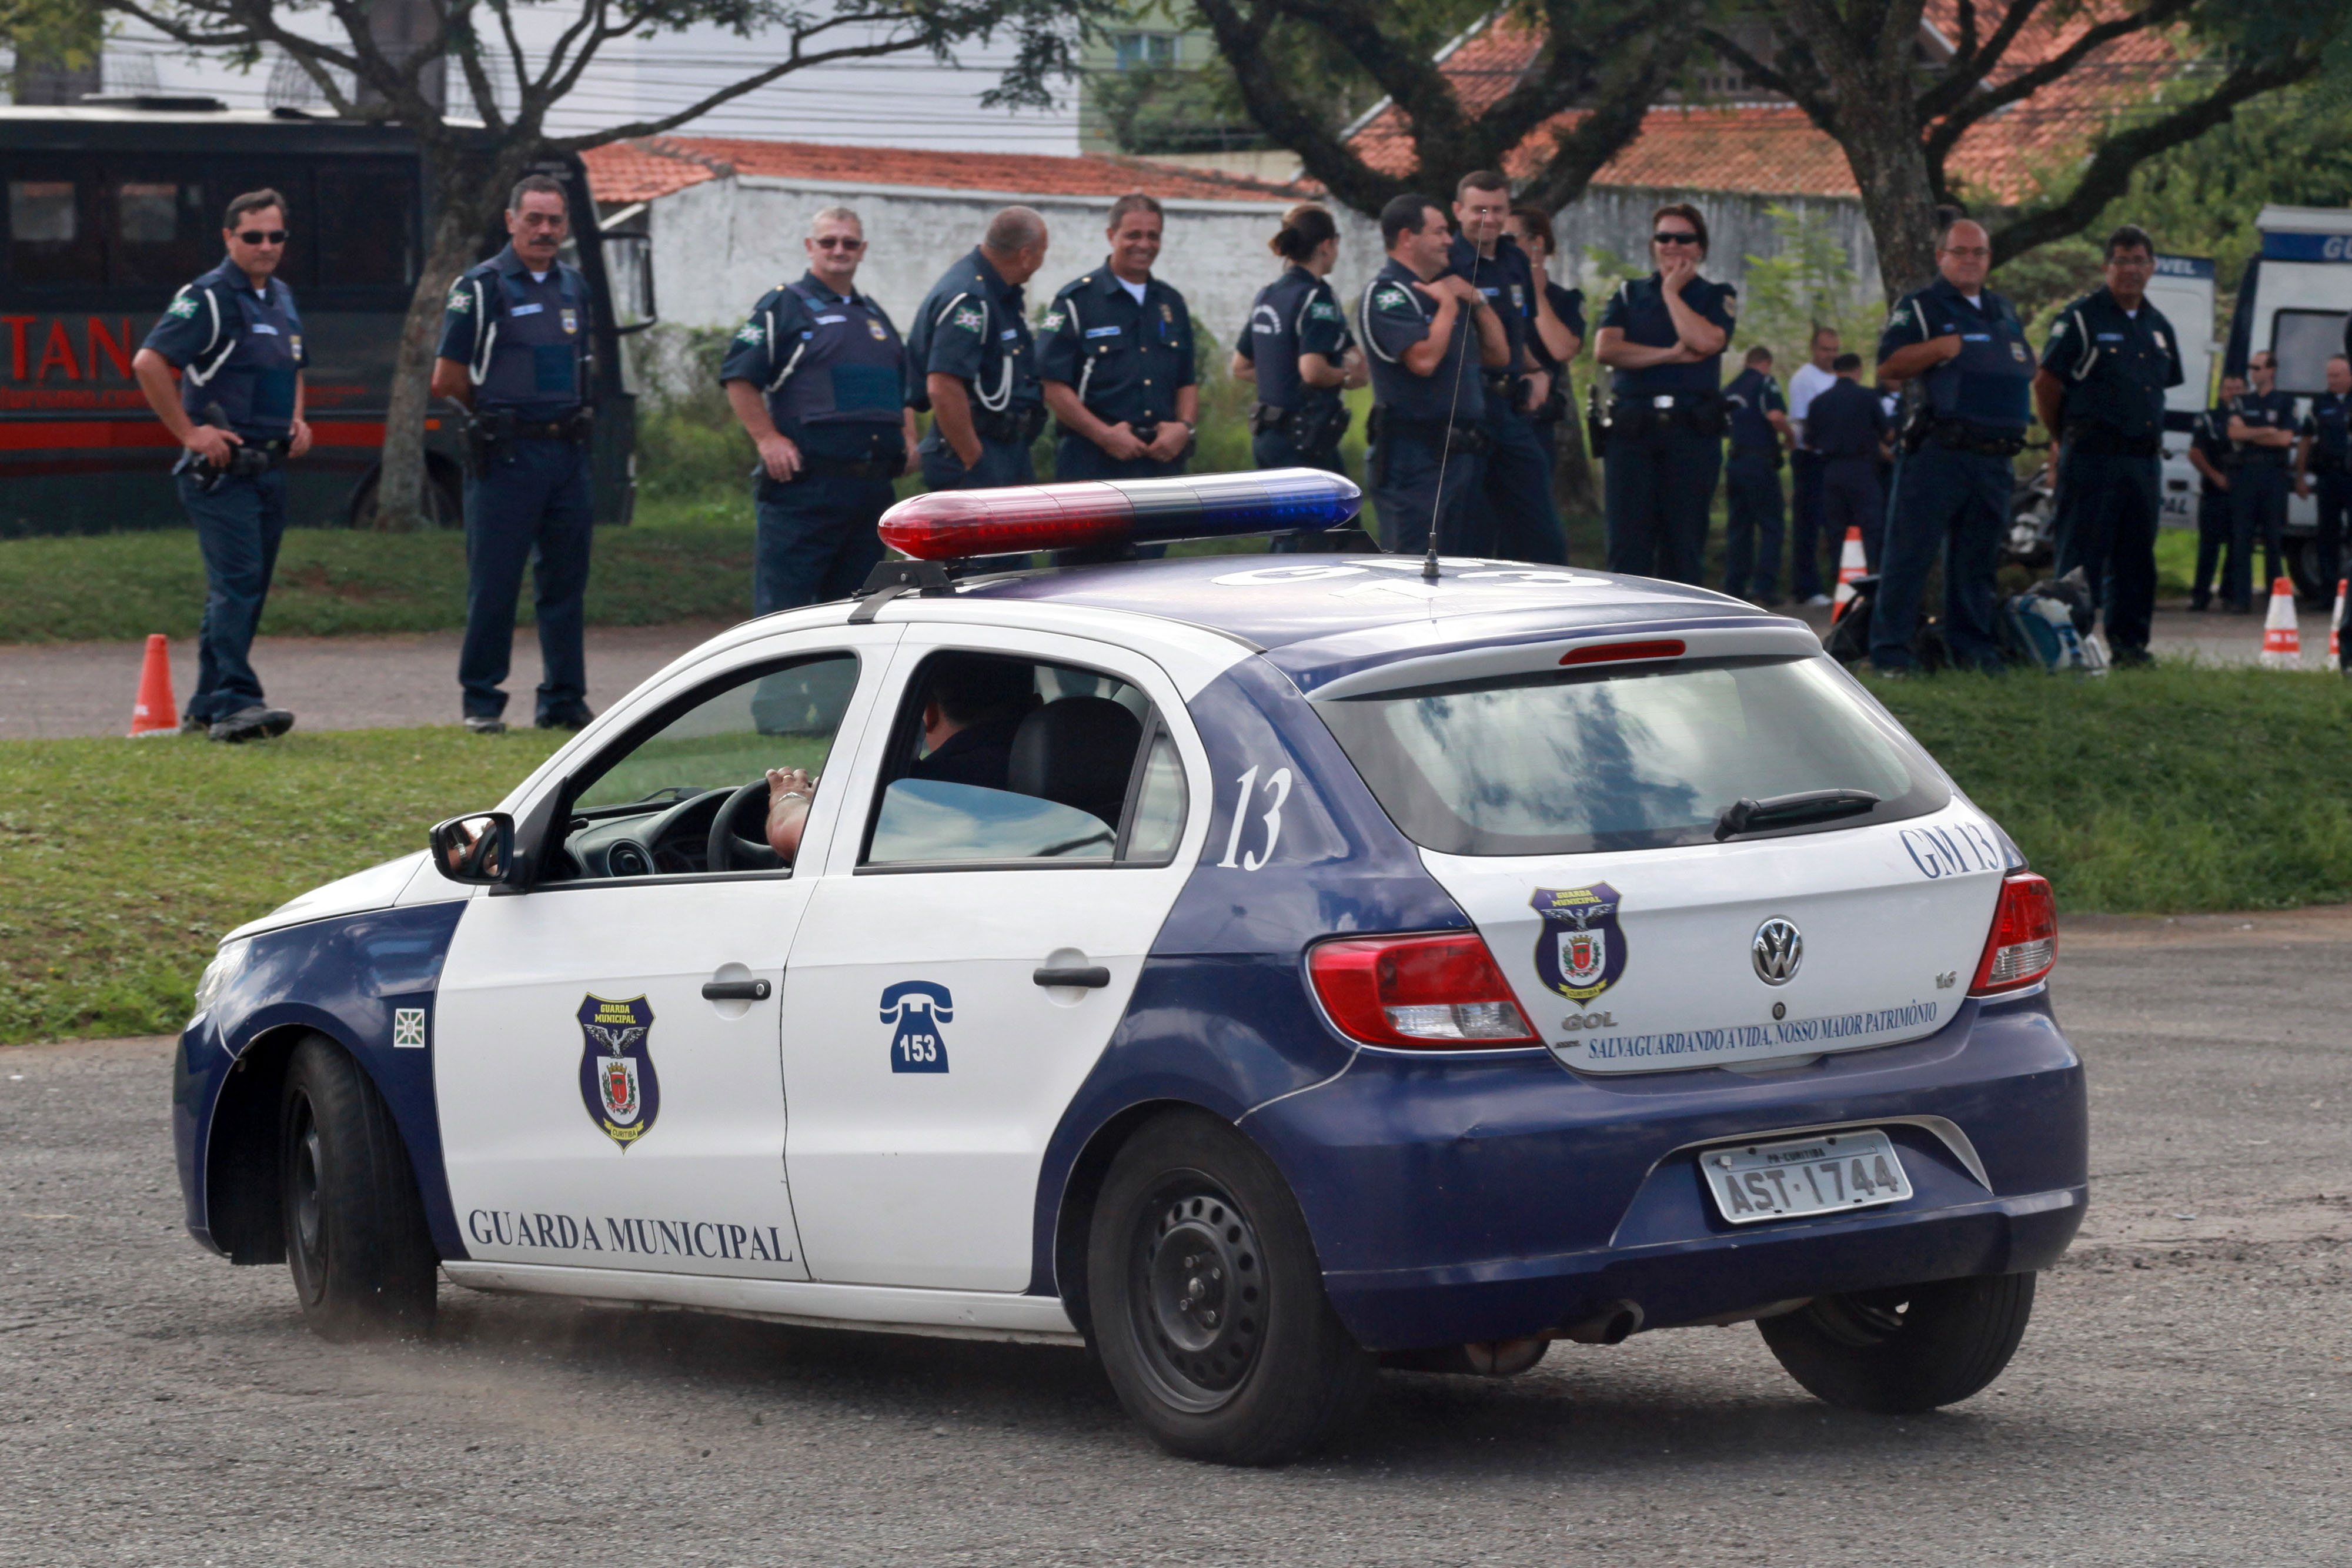  Homens armados invadem CMEI em Curitiba